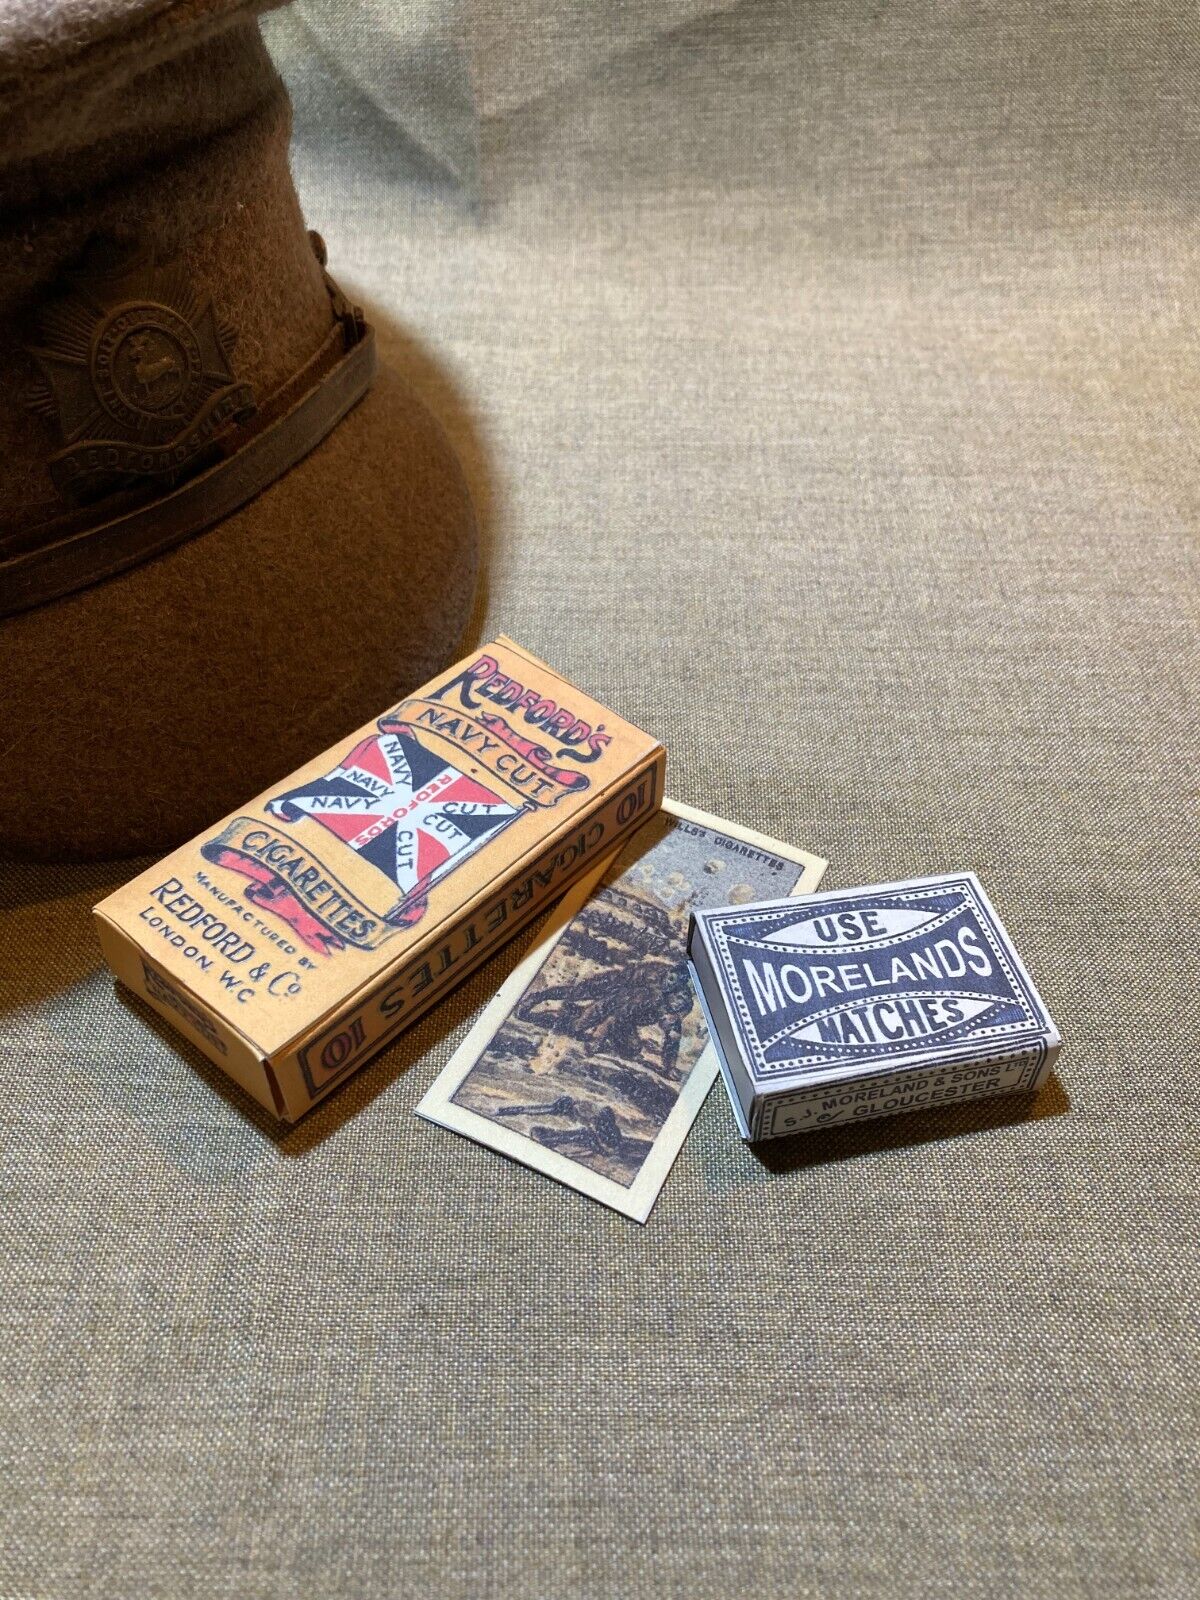 WWI British Army Cigarette box Redfords Navy Cut & Match box